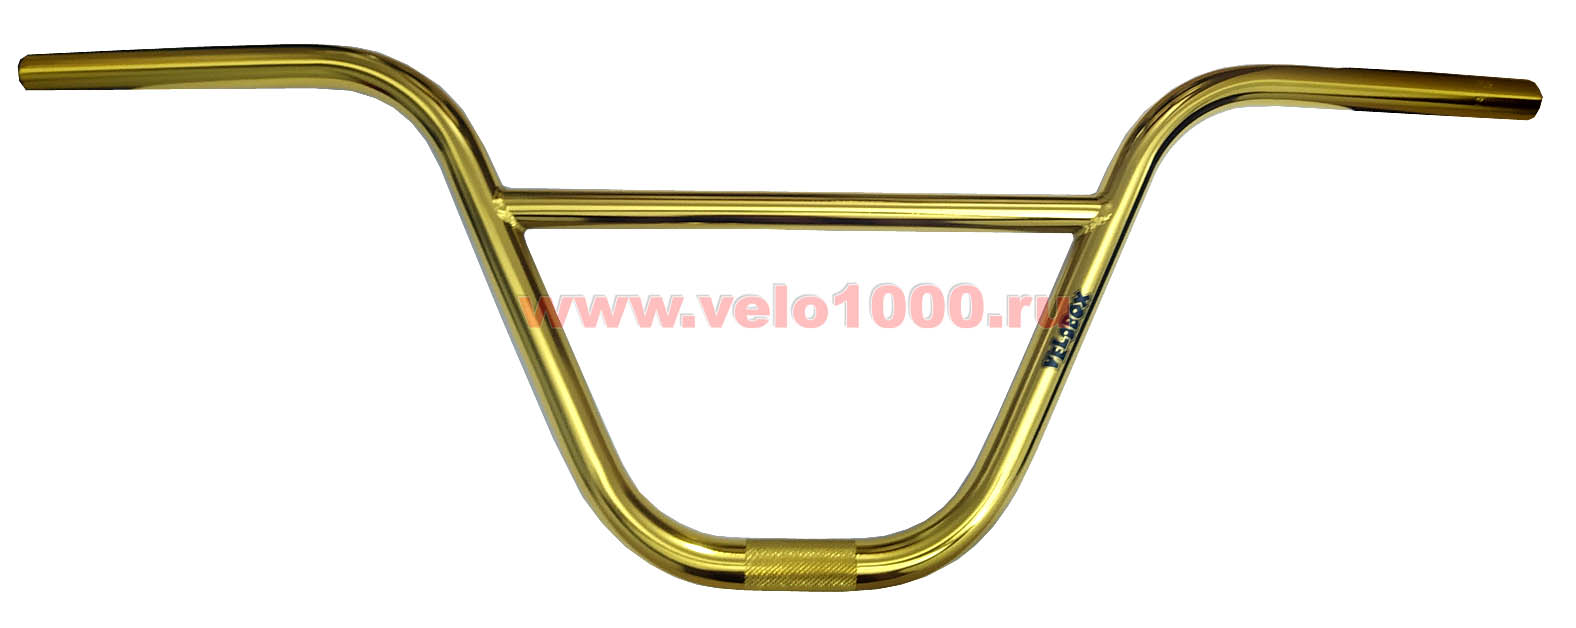 Руль 9"(226мм)x760мм, золотой, CR-MO, 13-баттированный, VELOBOX лого. 